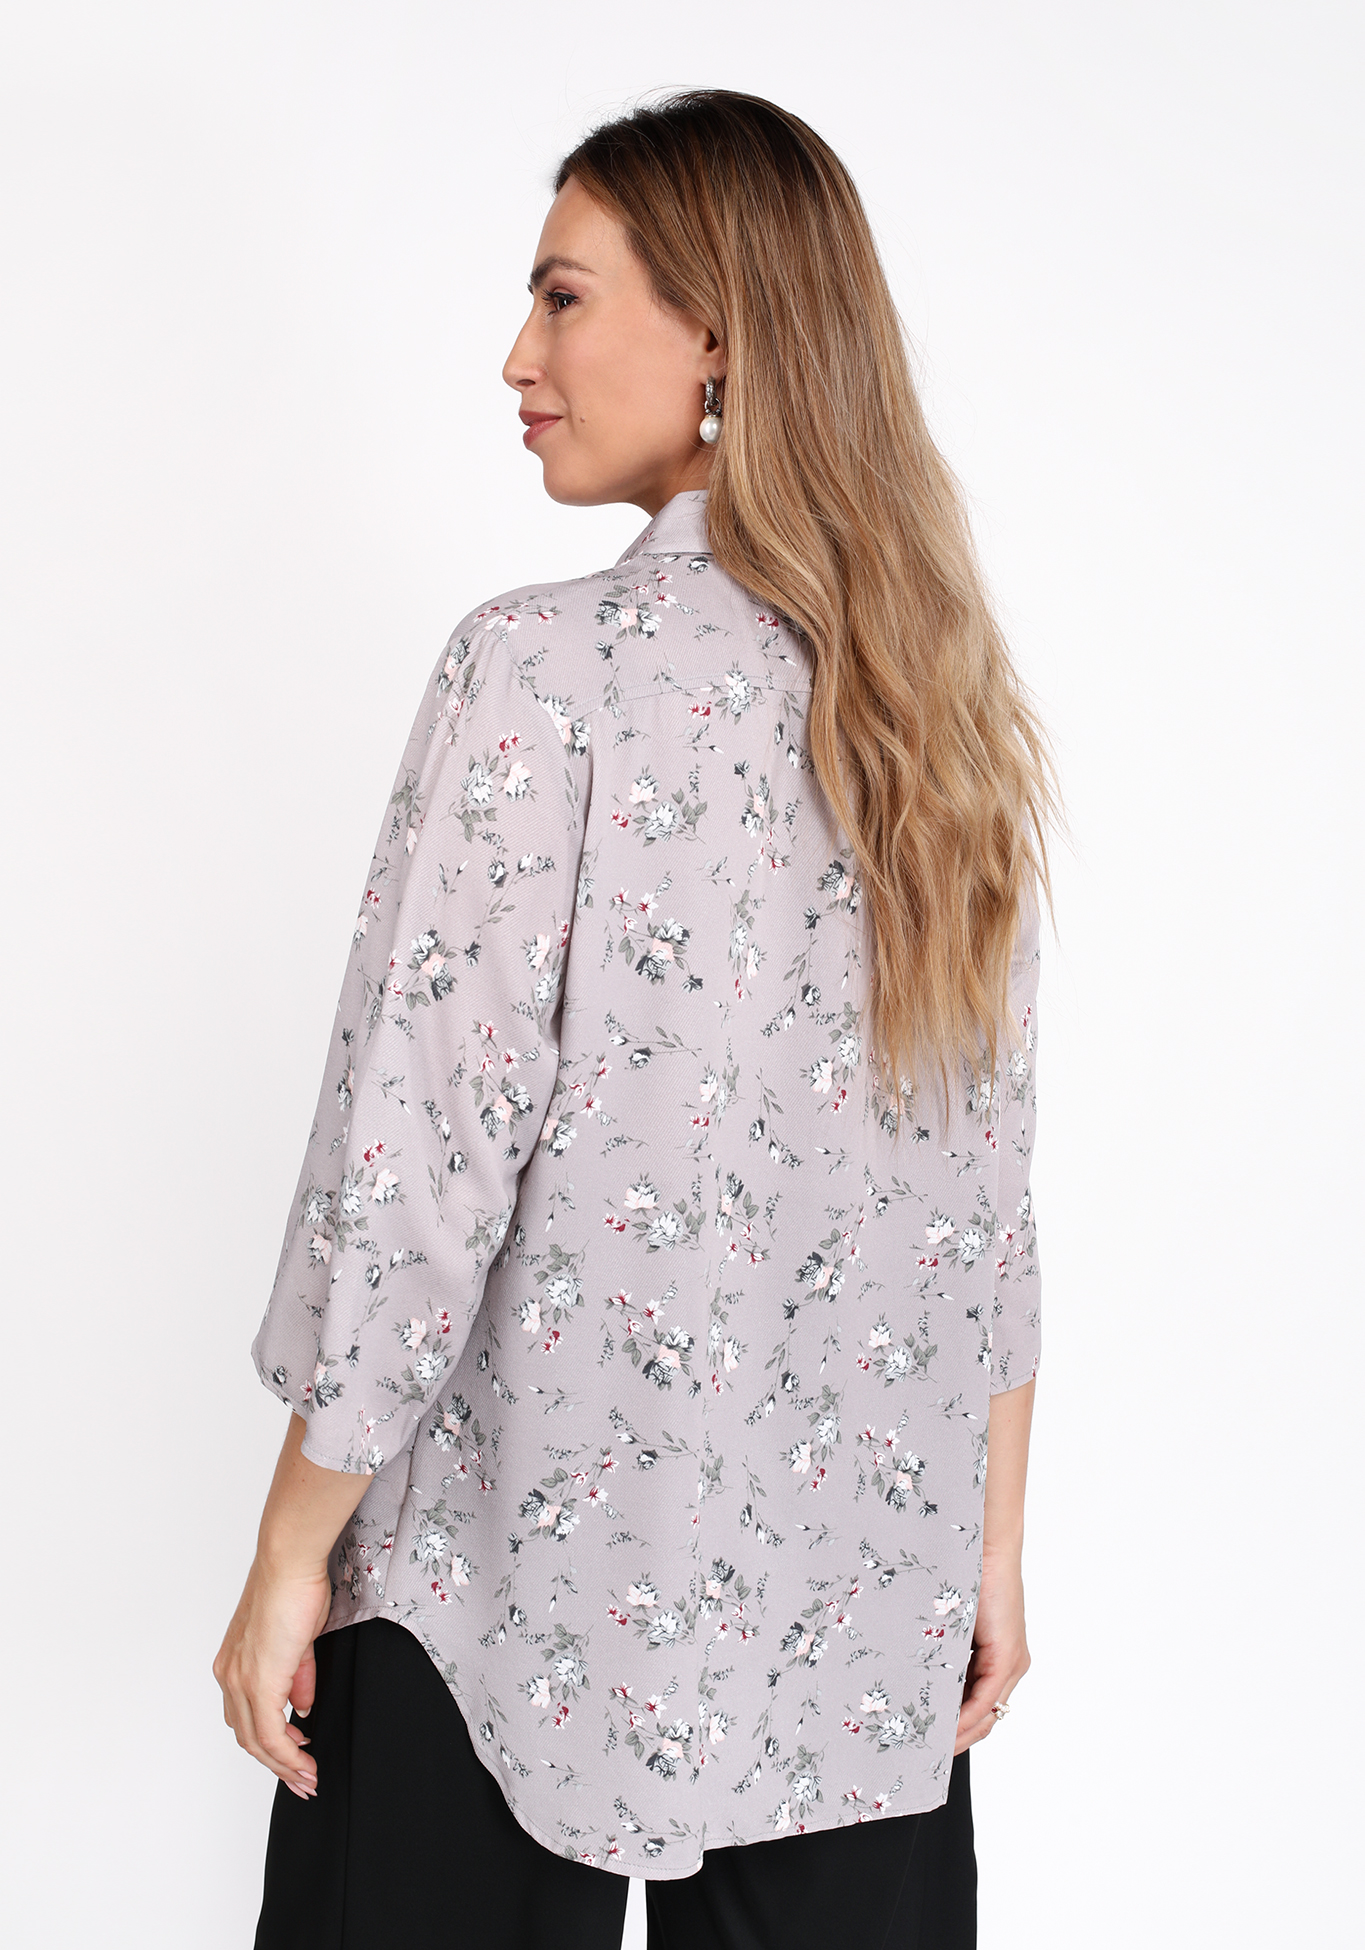 Рубашка на пуговицах с цветочным принтом Bianka Modeno, размер 50 свободная модель - фото 6